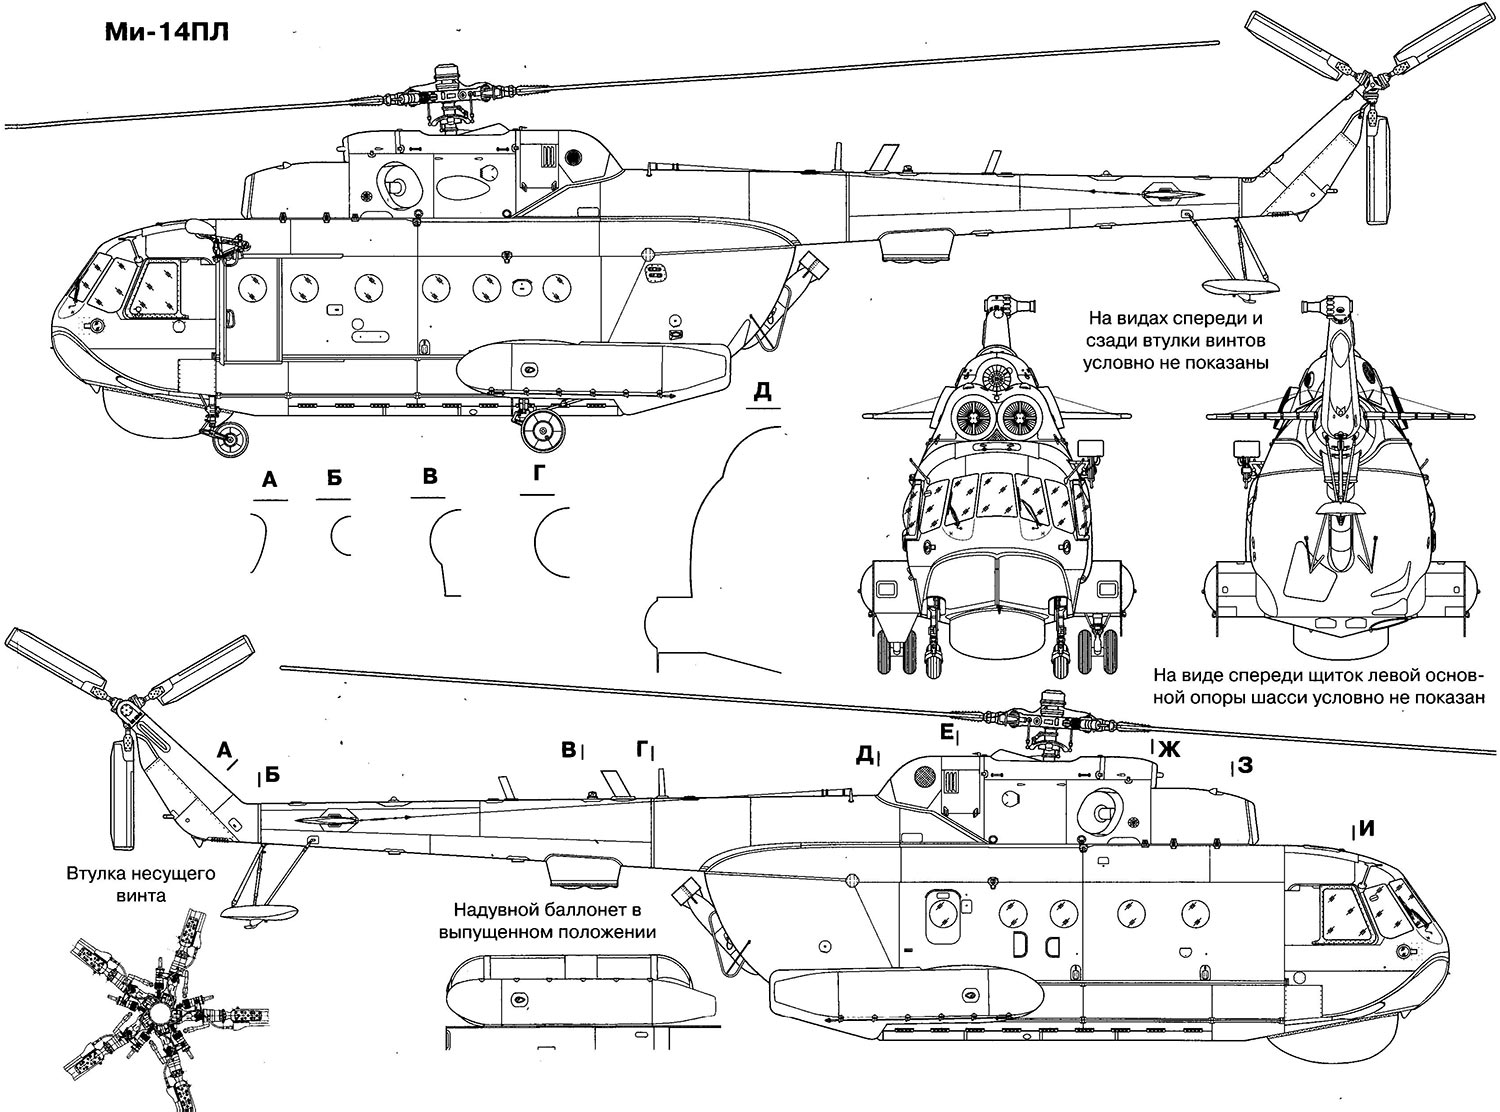 Чертеж вертолета-амфибии Ми-14